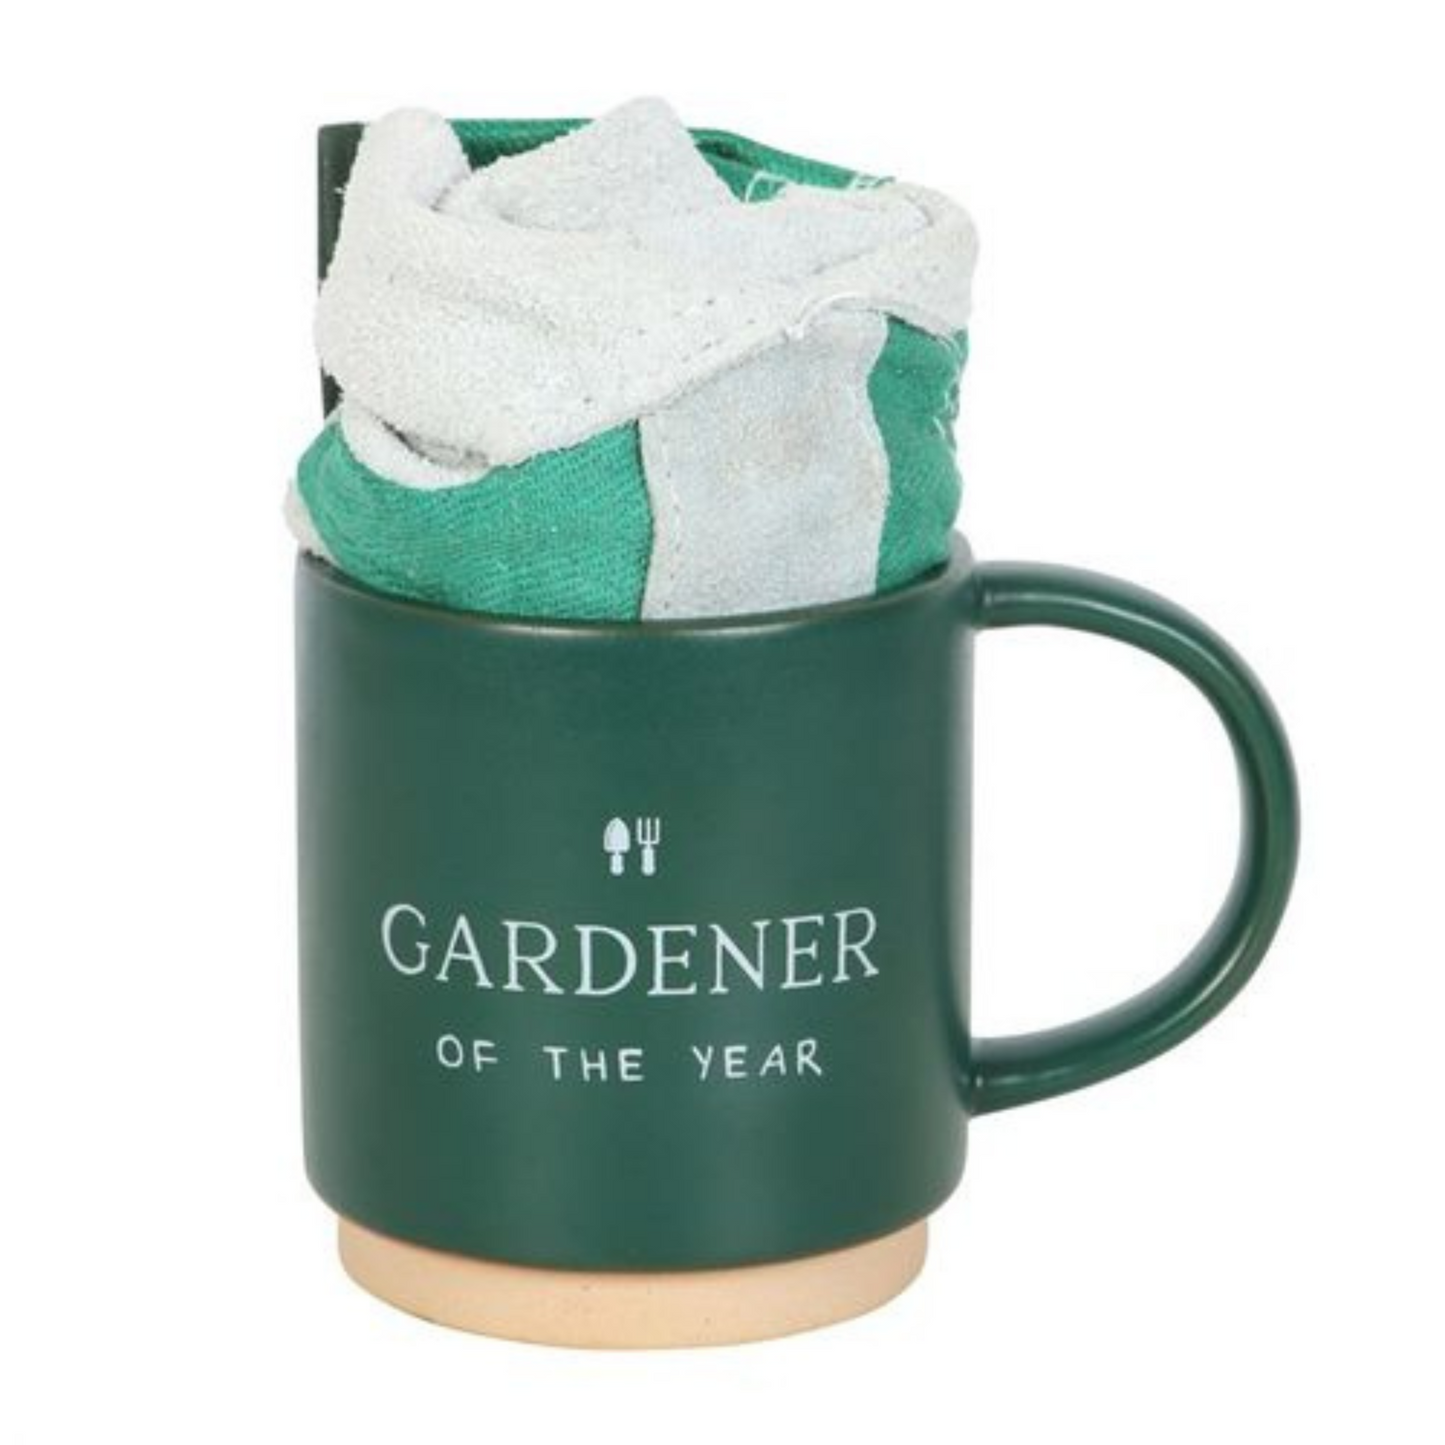 Gardener Mug And Gloves Gift Set